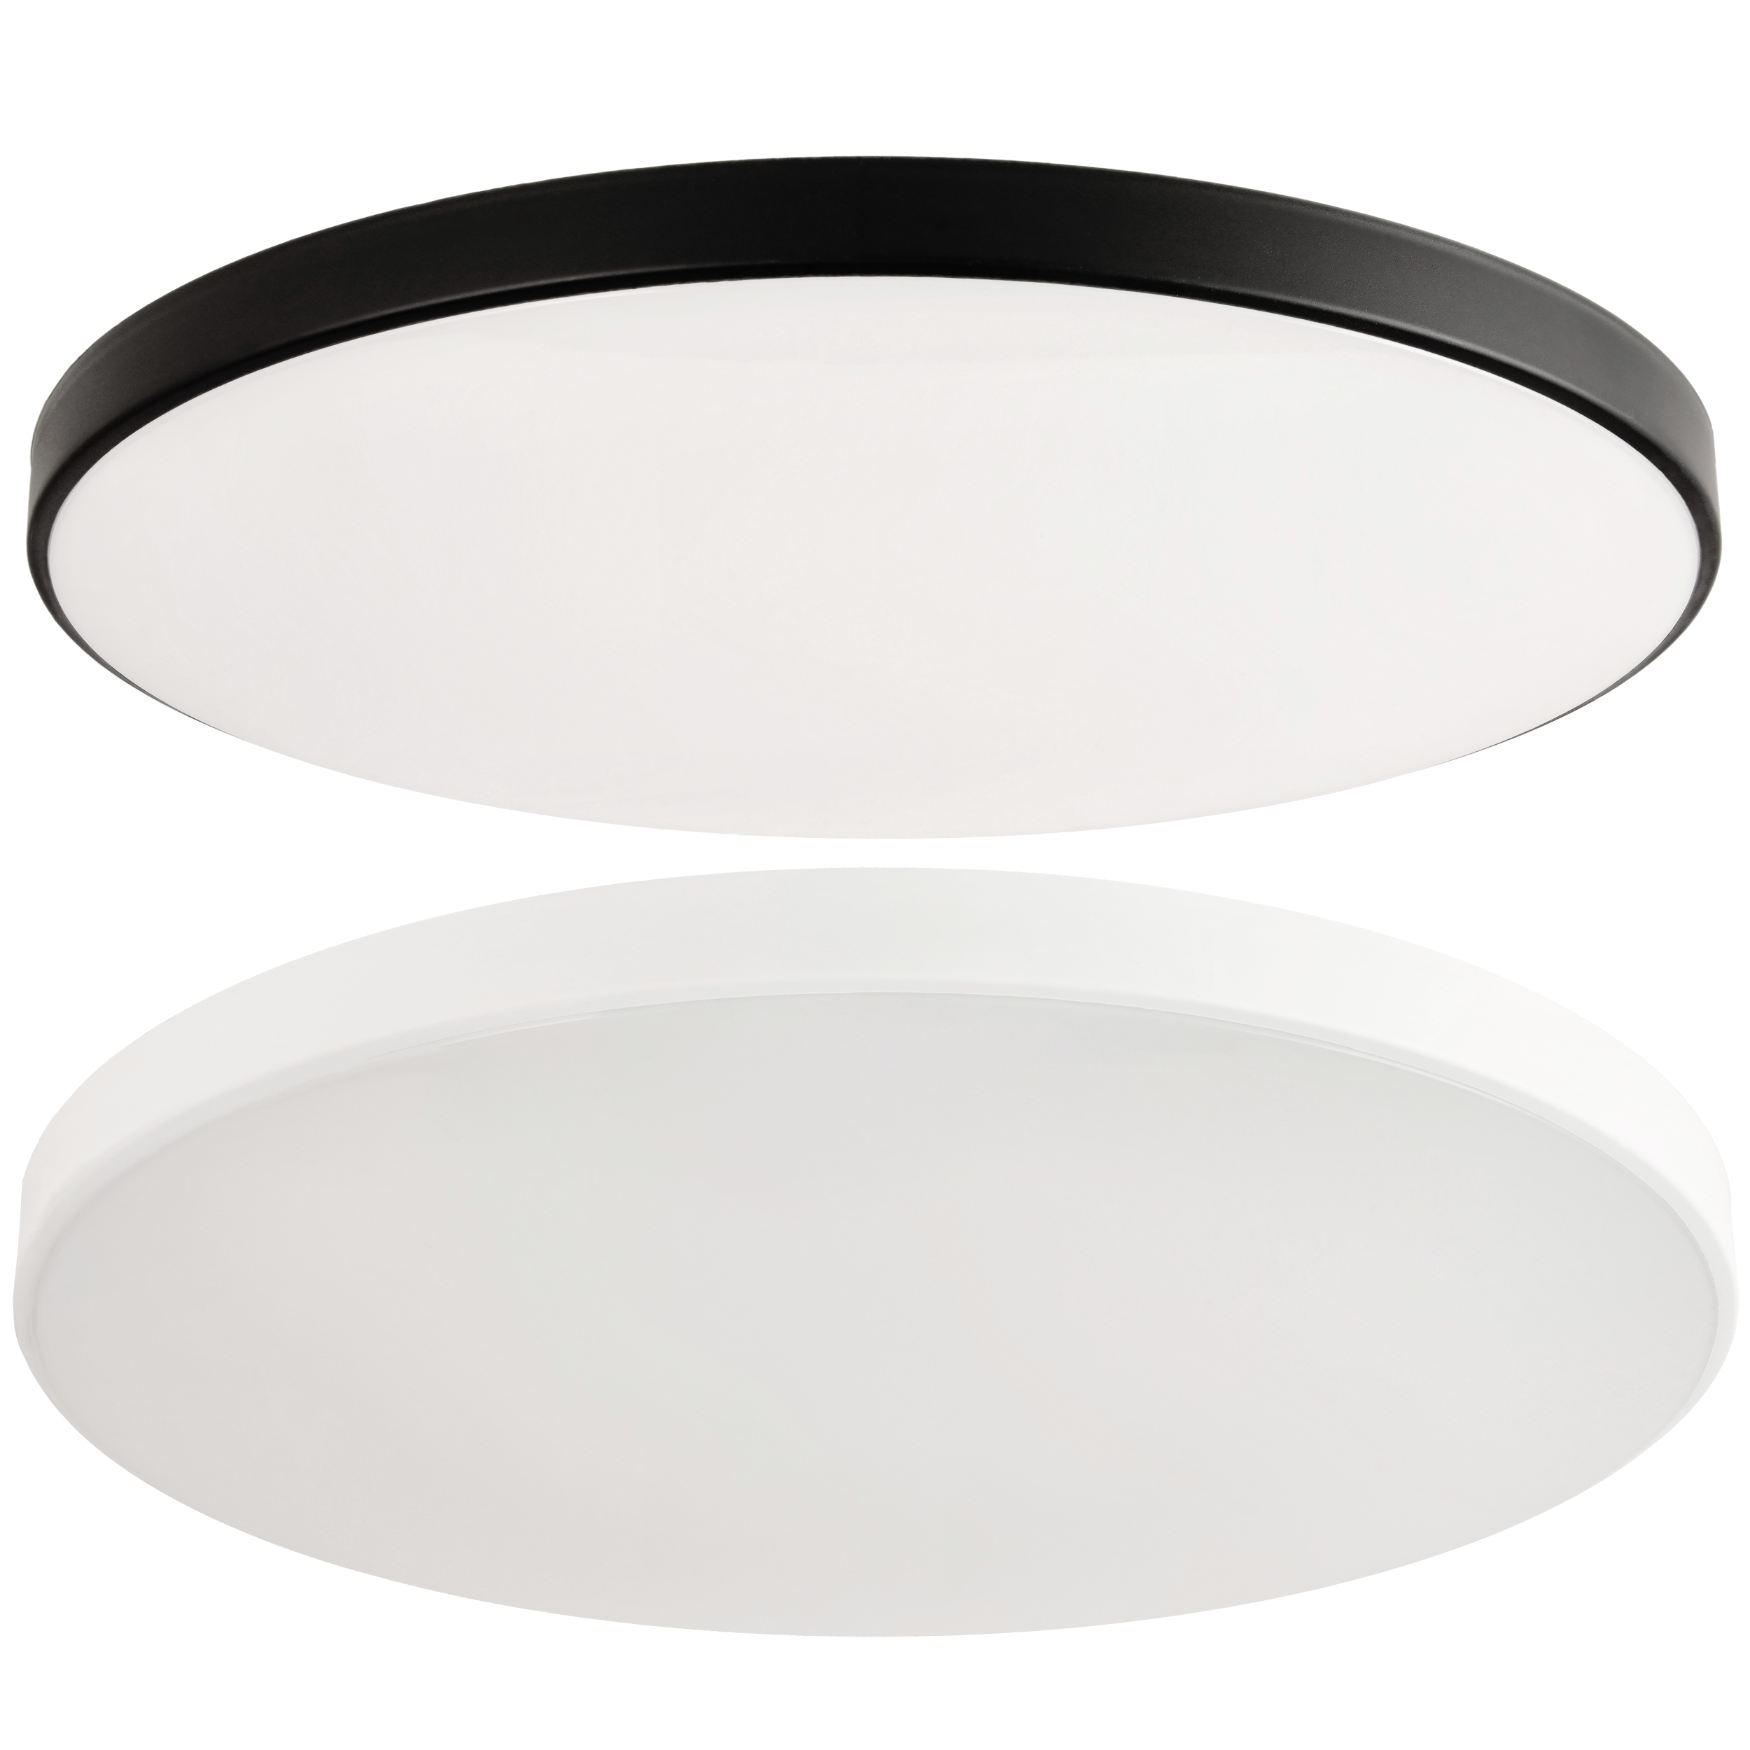 LED stropní svítidlo 18W 2v1 bílá/černá